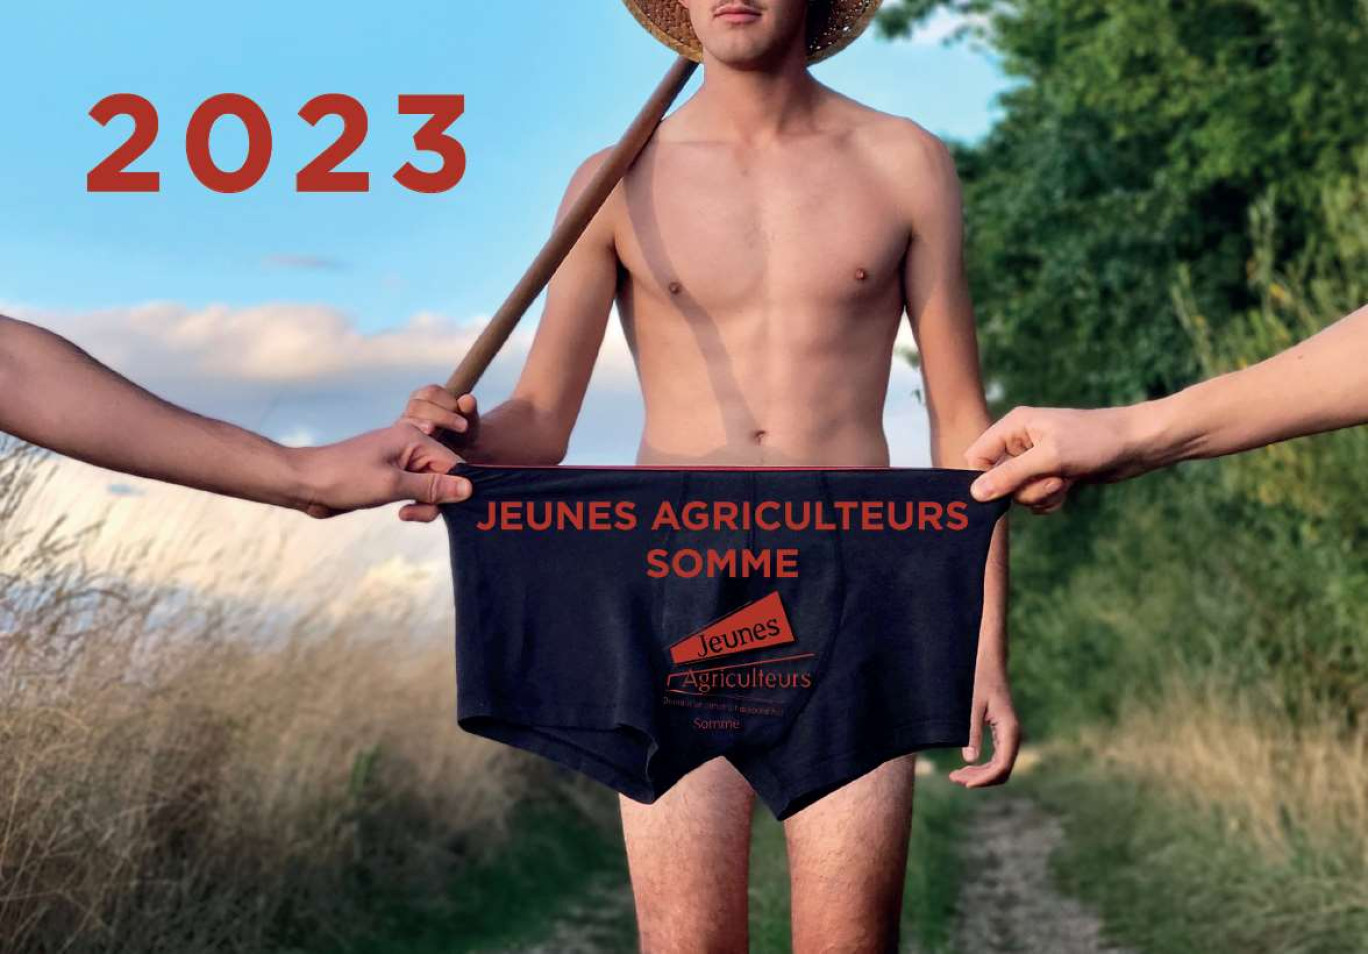 Les Jeunes agriculteurs de la Somme ont leur calendrier